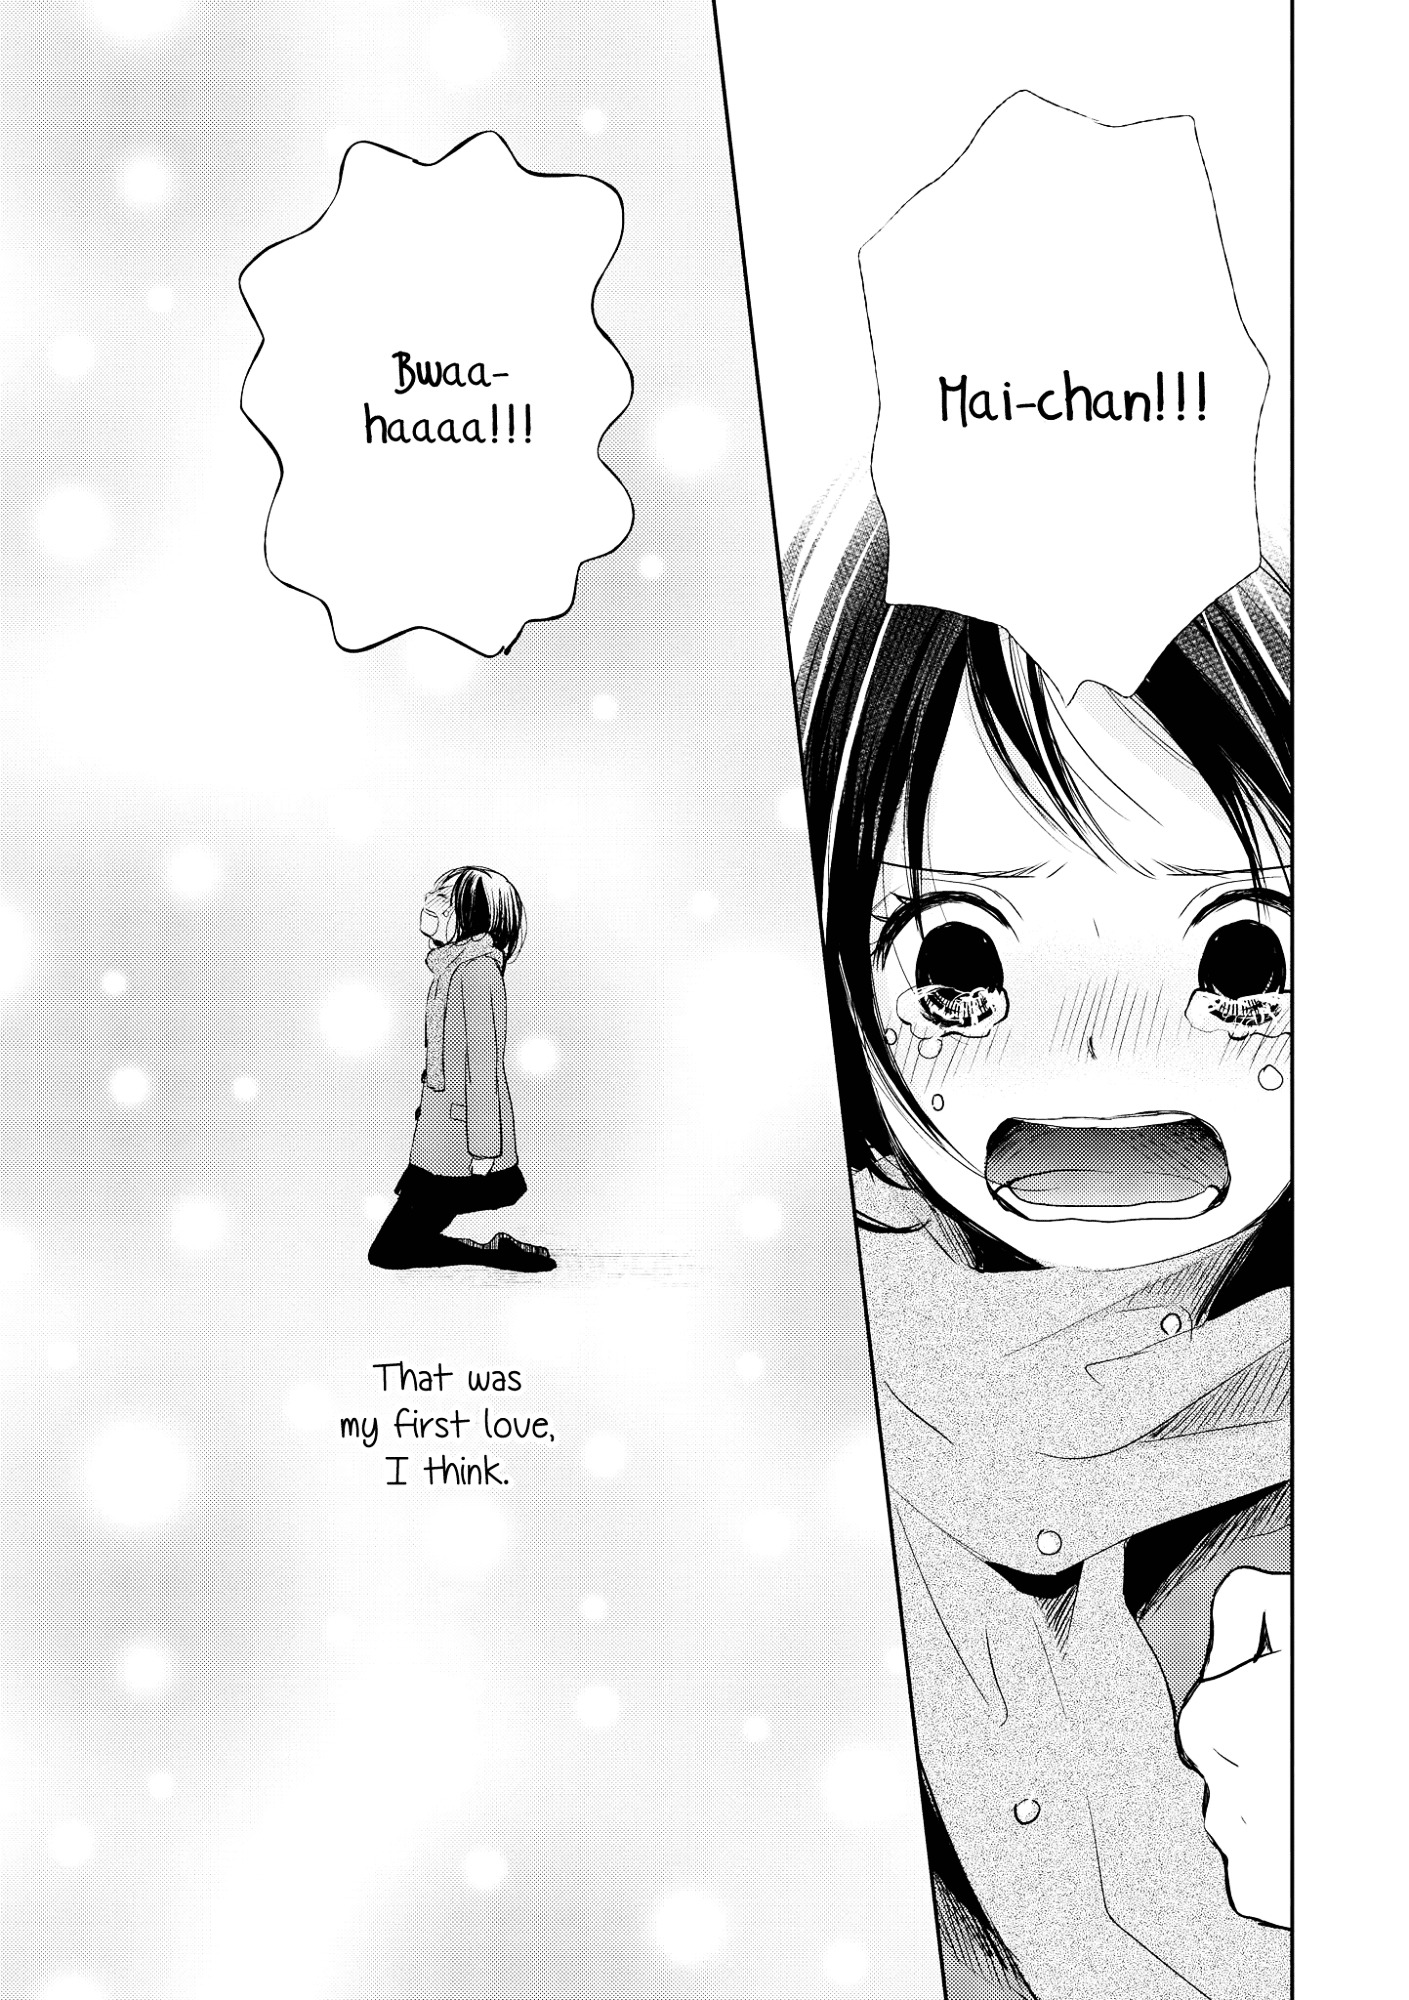 Akaneiro No Kisu Wa Okujou De Vol.1 Chapter 6 : The Love Relationship Between Mai-Chan And Ecchan - Picture 3